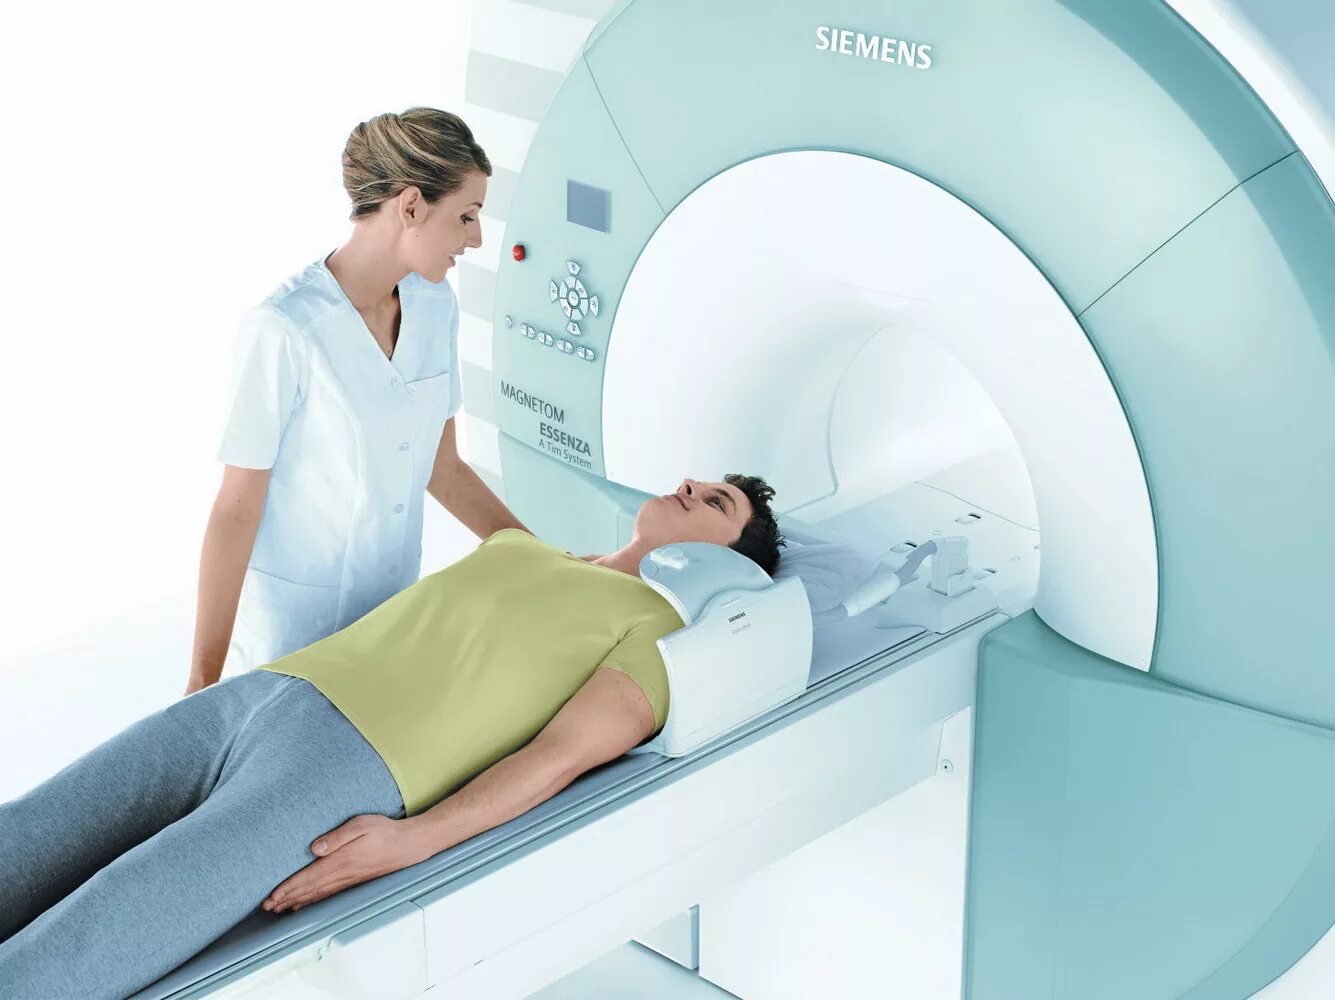 Мрт ноябрьск. Siemens MAGNETOM Essenza 1.5. Мрт томограф. Магнито-резонансный томограф. Магнитно-резонансная томография (мрт).